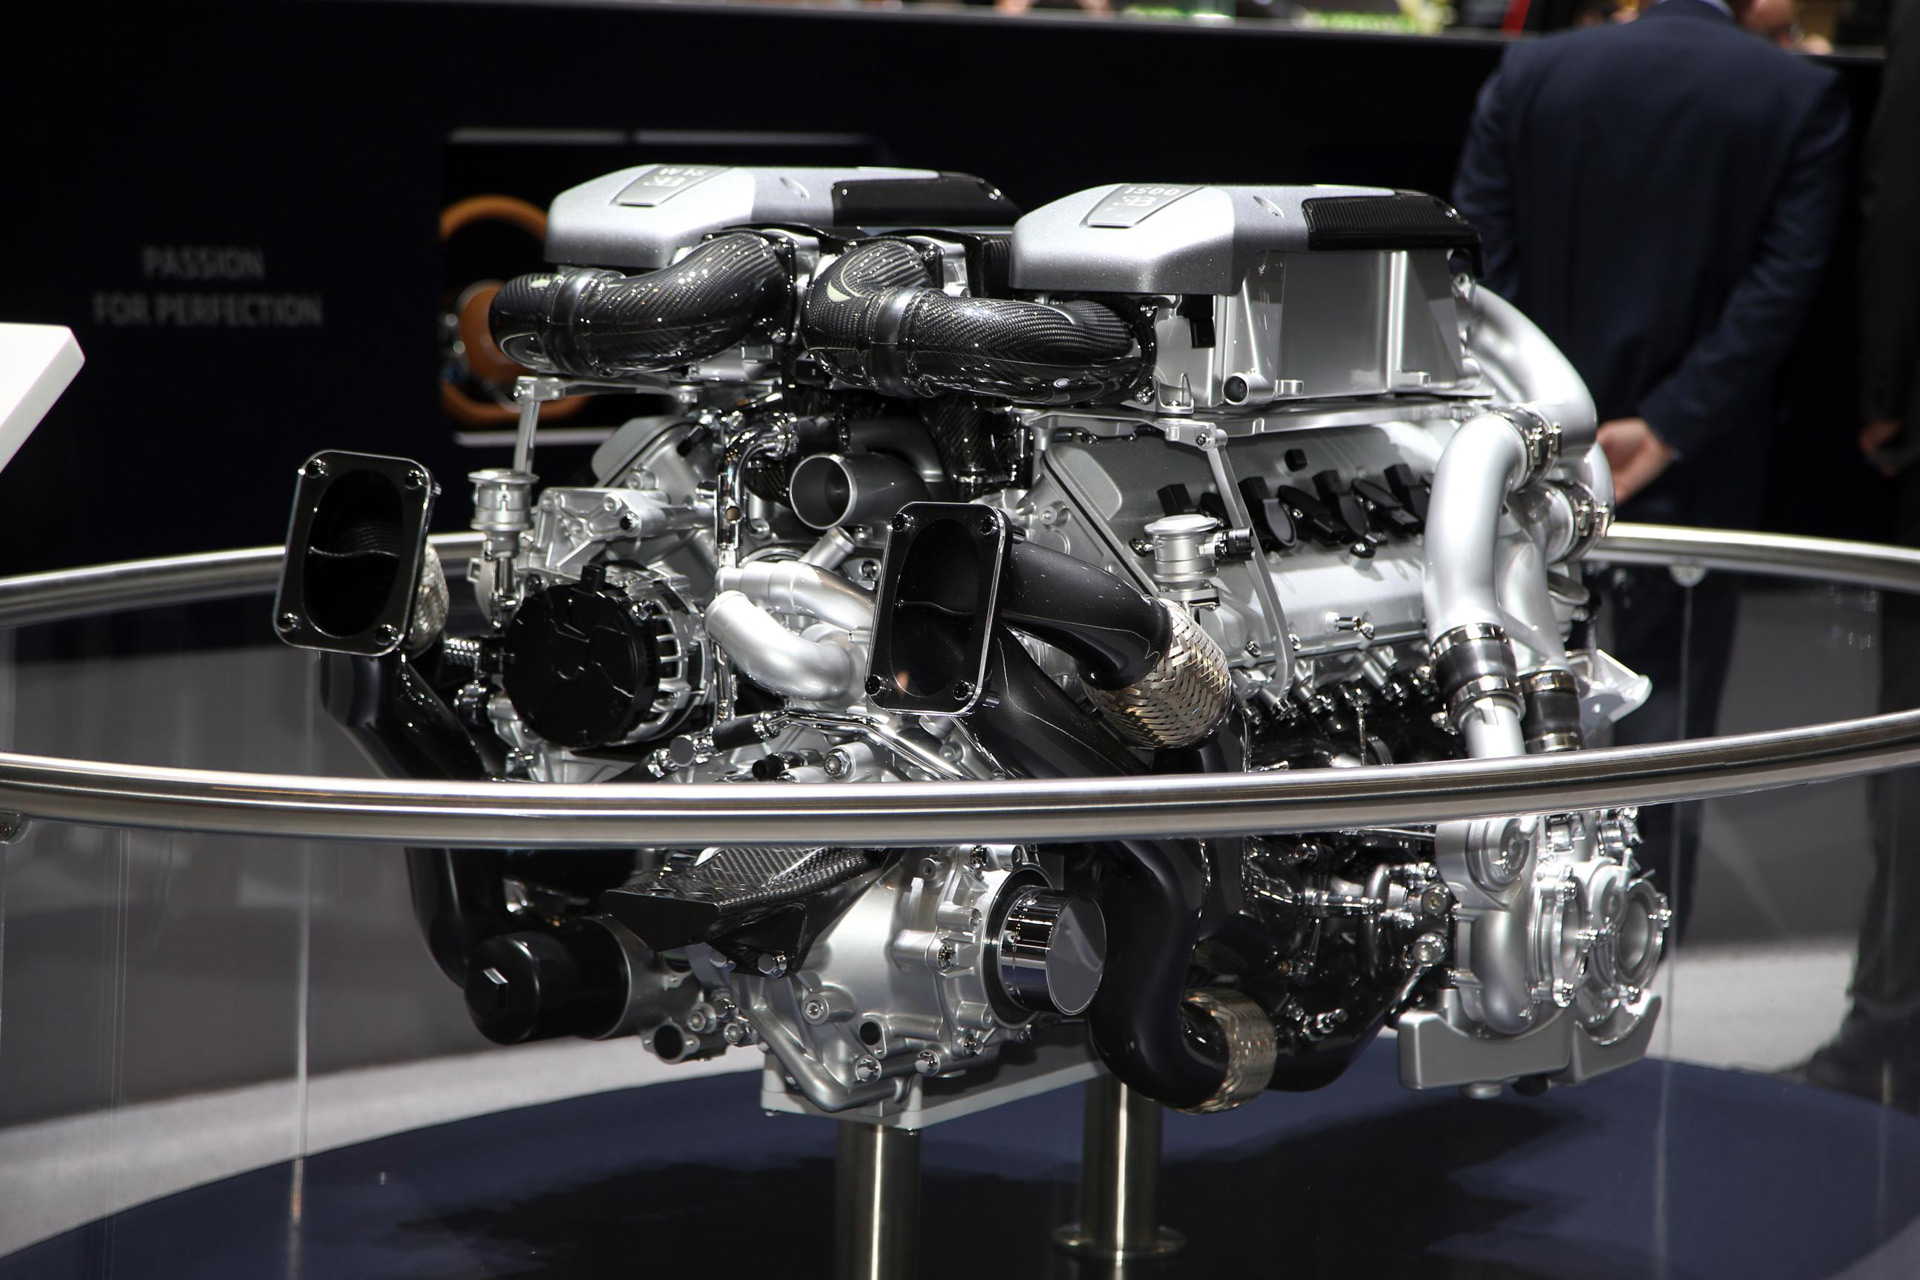 Bugatti engine specifications